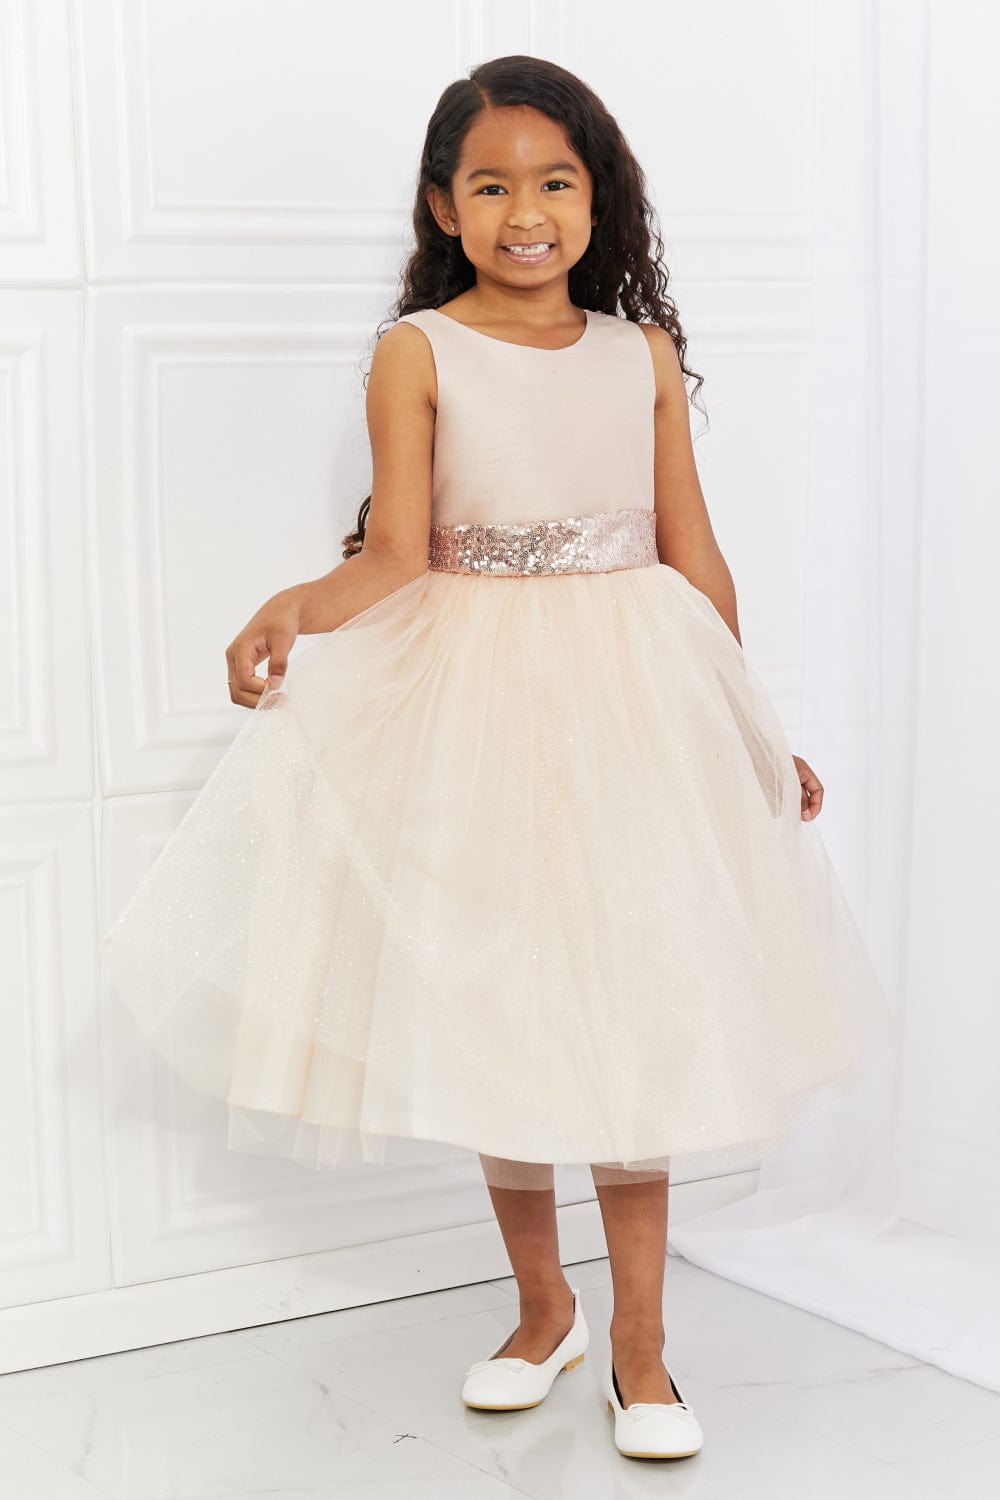 Kid's Dream Little Miss Classy Tutu Dress in Light Apricot